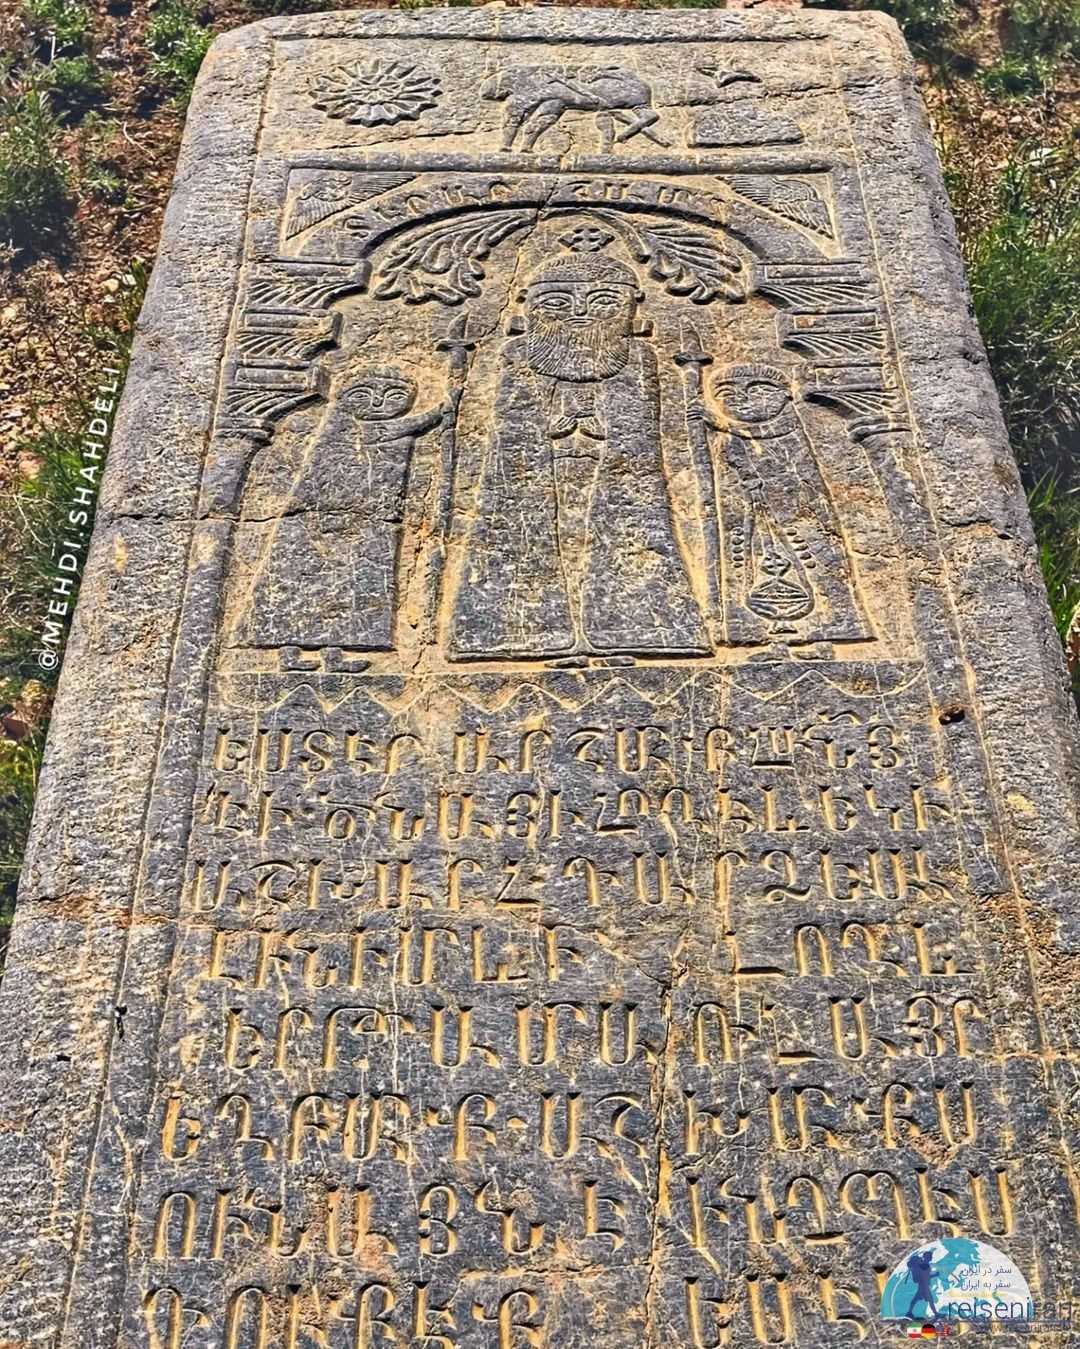 سنگ قبری در آرامگاه ارامنه روستای خویگان علیا